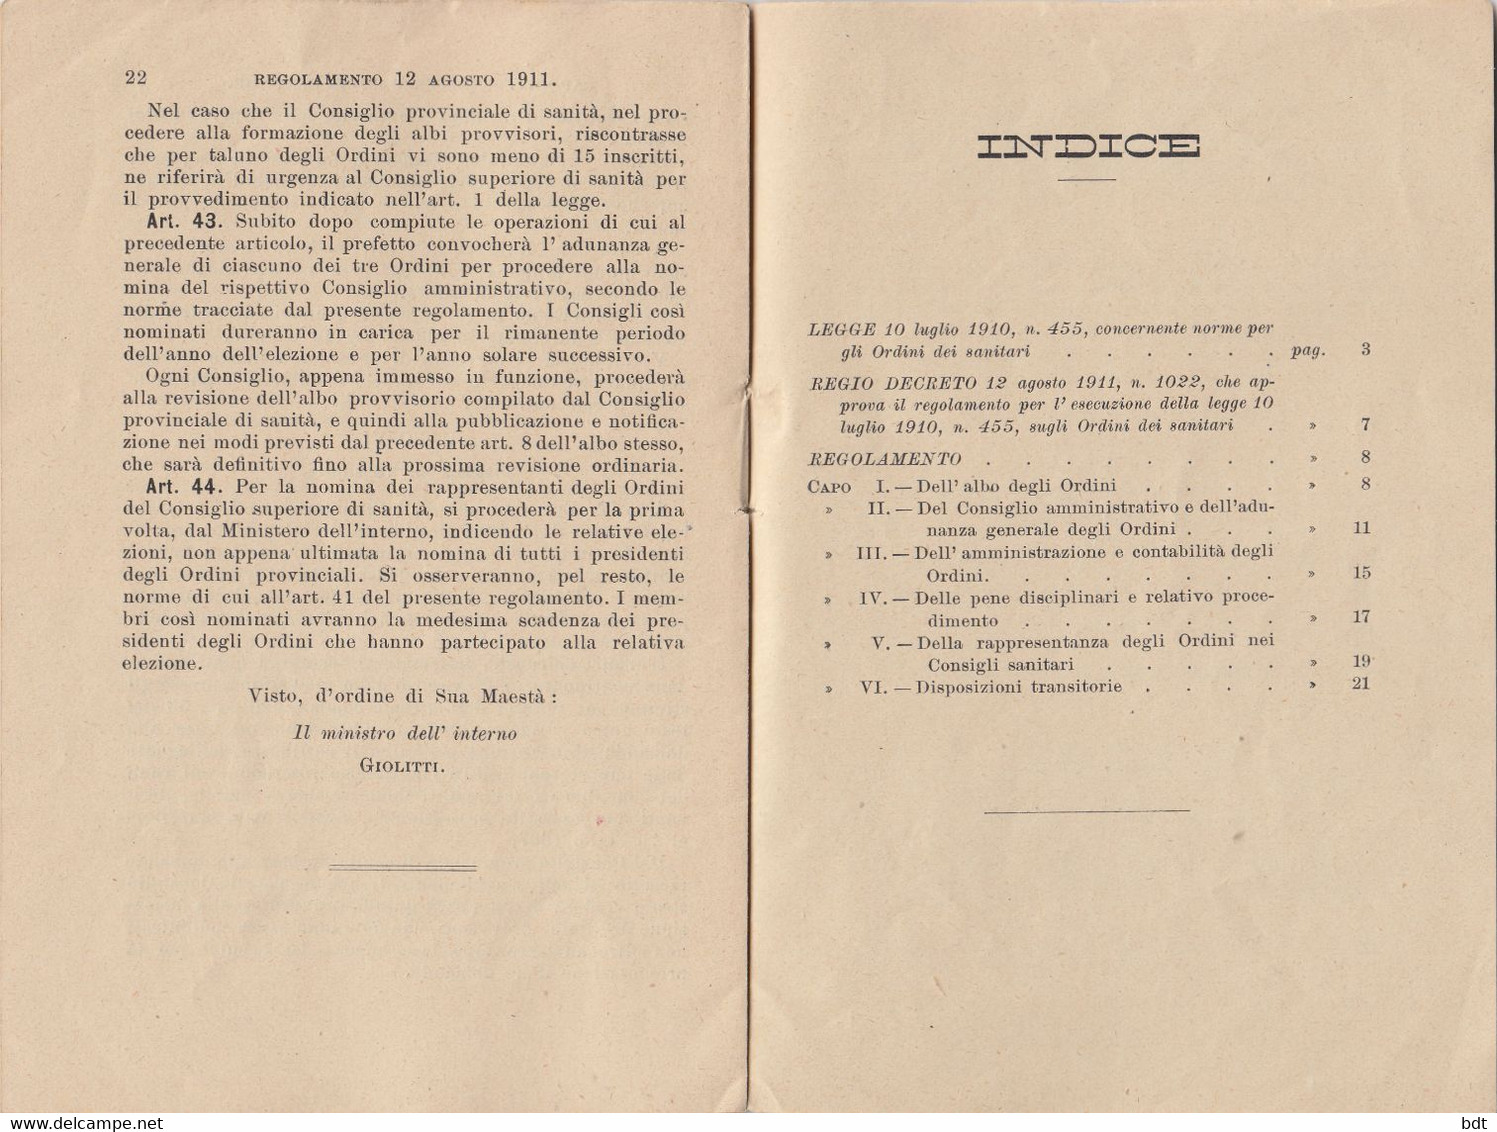 RC093 - 1910 LIBRO COMPLETO 23 PAGINE "LEGGE SUGLI ORDINI DEI SANITARI Del 10/7" - Médecine, Biologie, Chimie